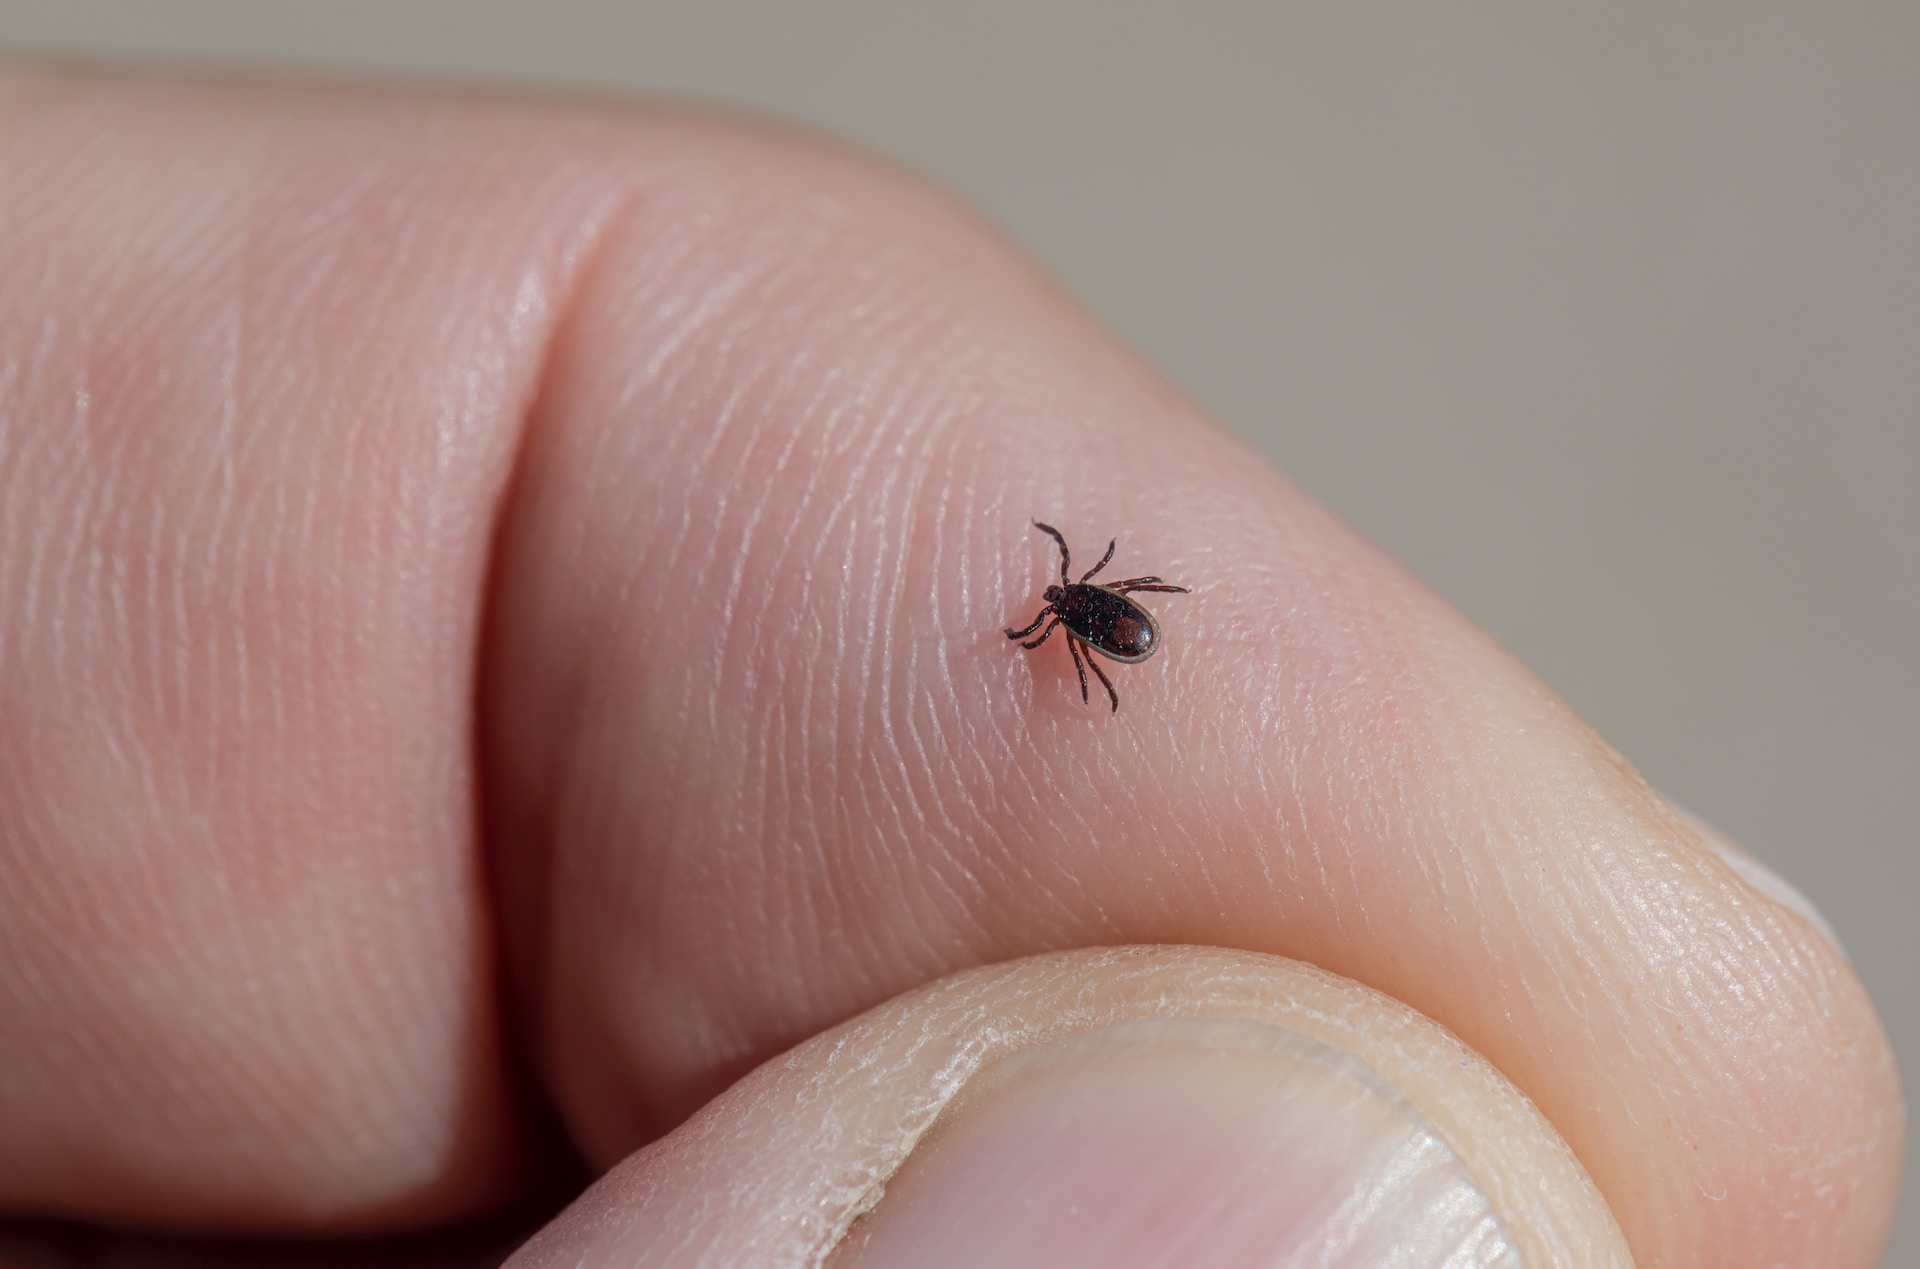 Estate, zanzare, zecche e vespe: i rischi sanitari e la prevenzione